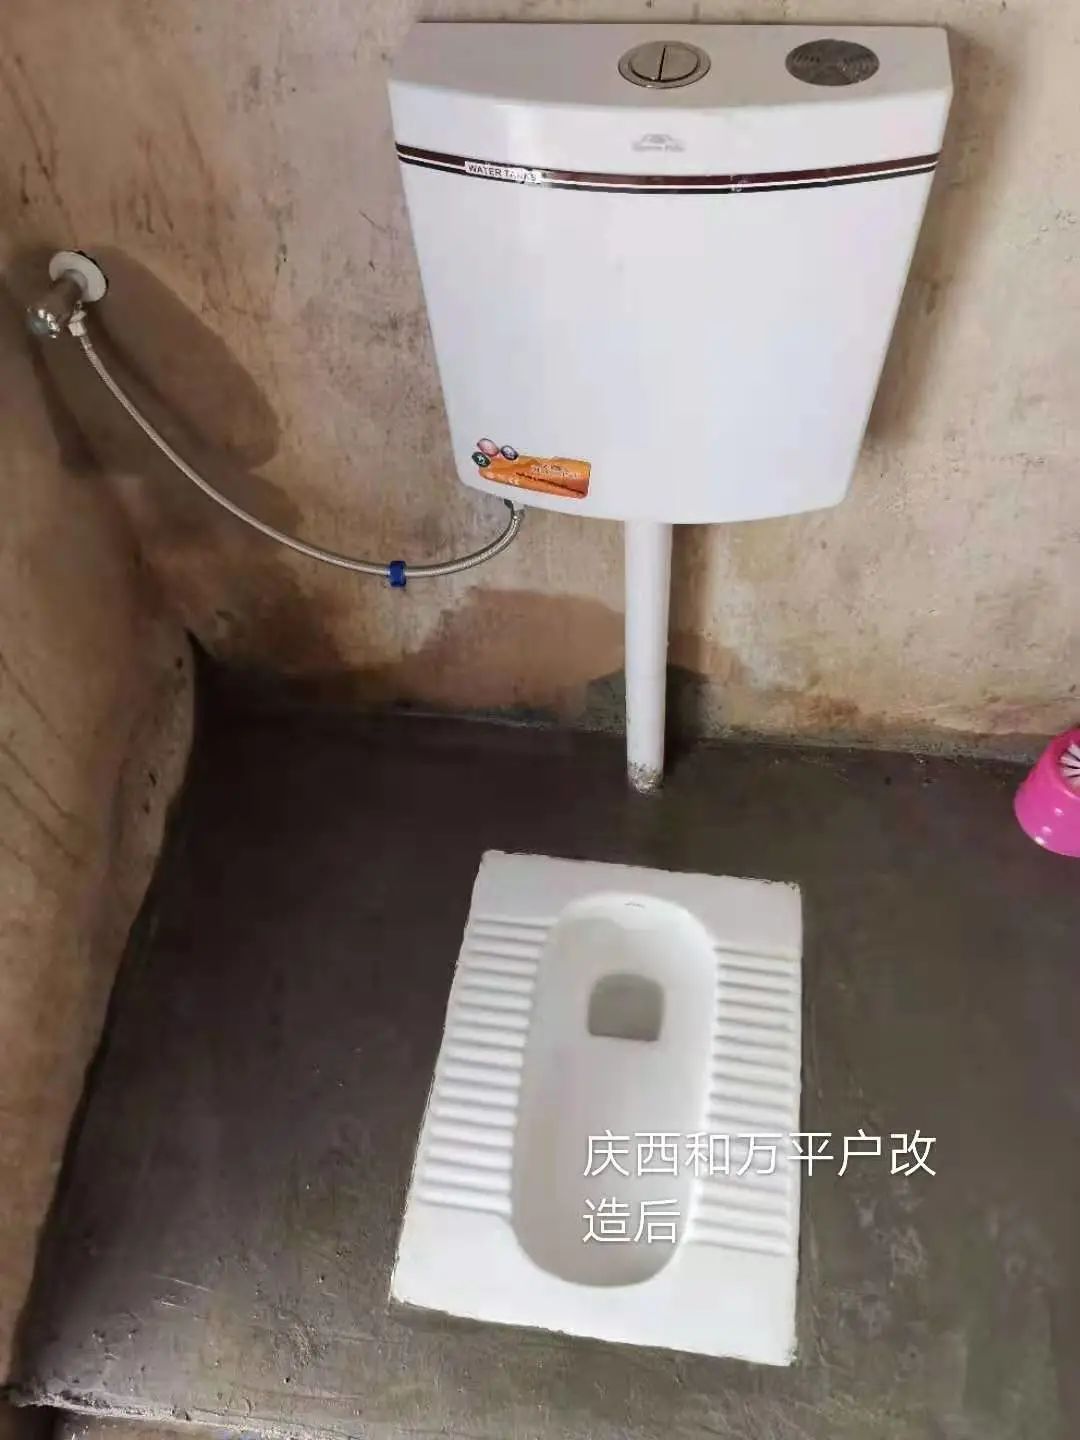 四川农村旱改厕工程改造方法及图片展示-环保在线